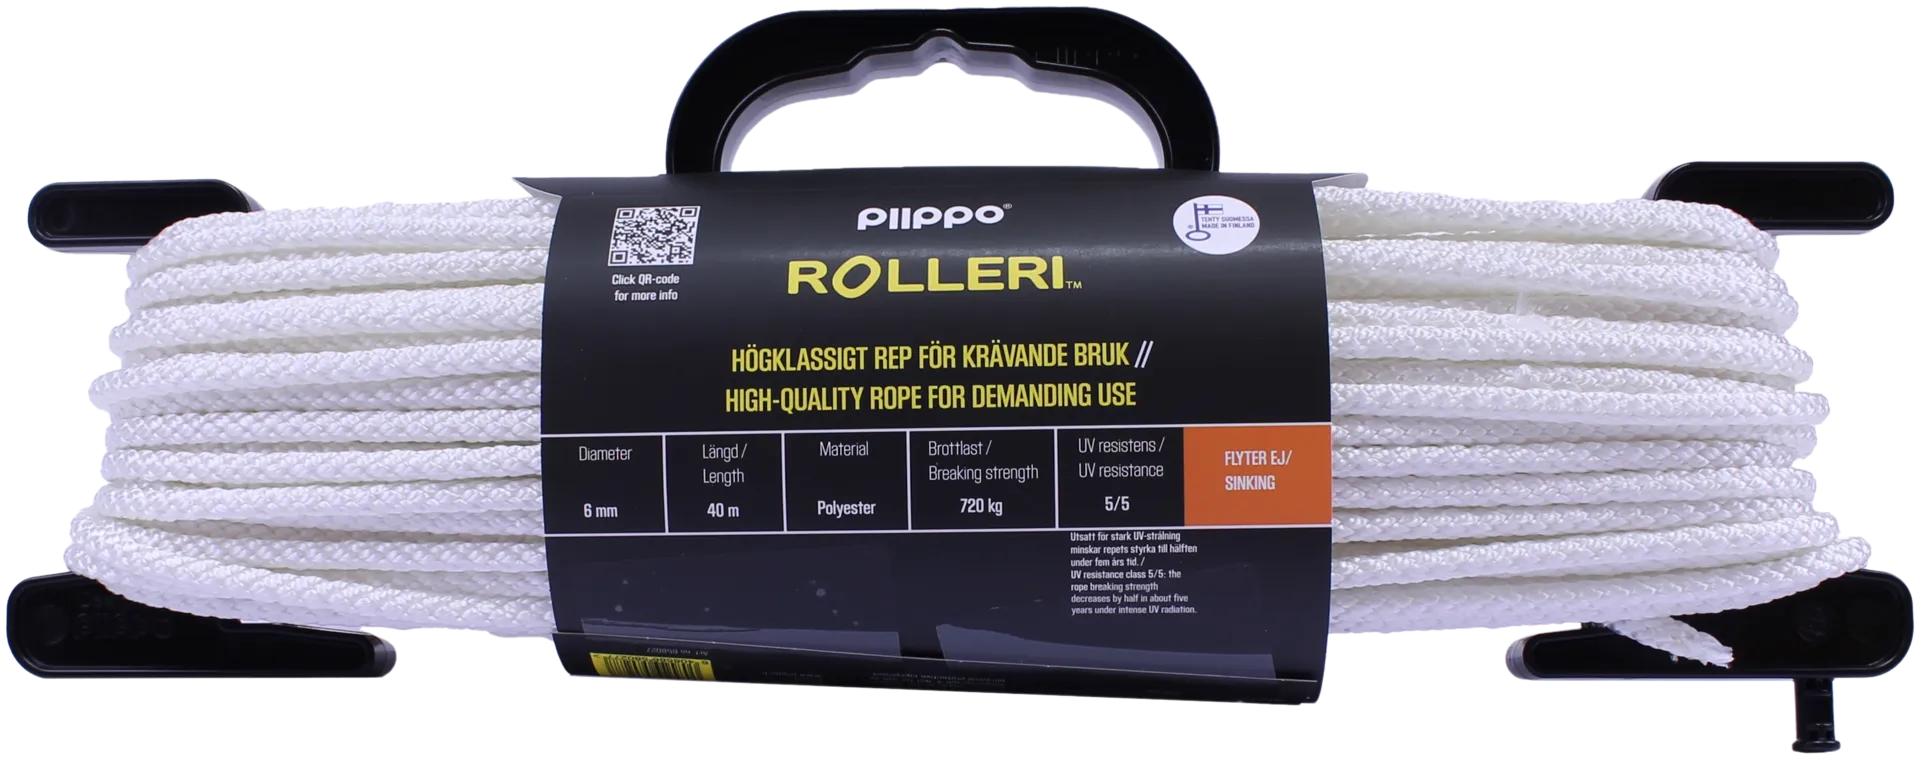 Piippo Rolleri vaativaan käyttöön 6mm x 40m - 2